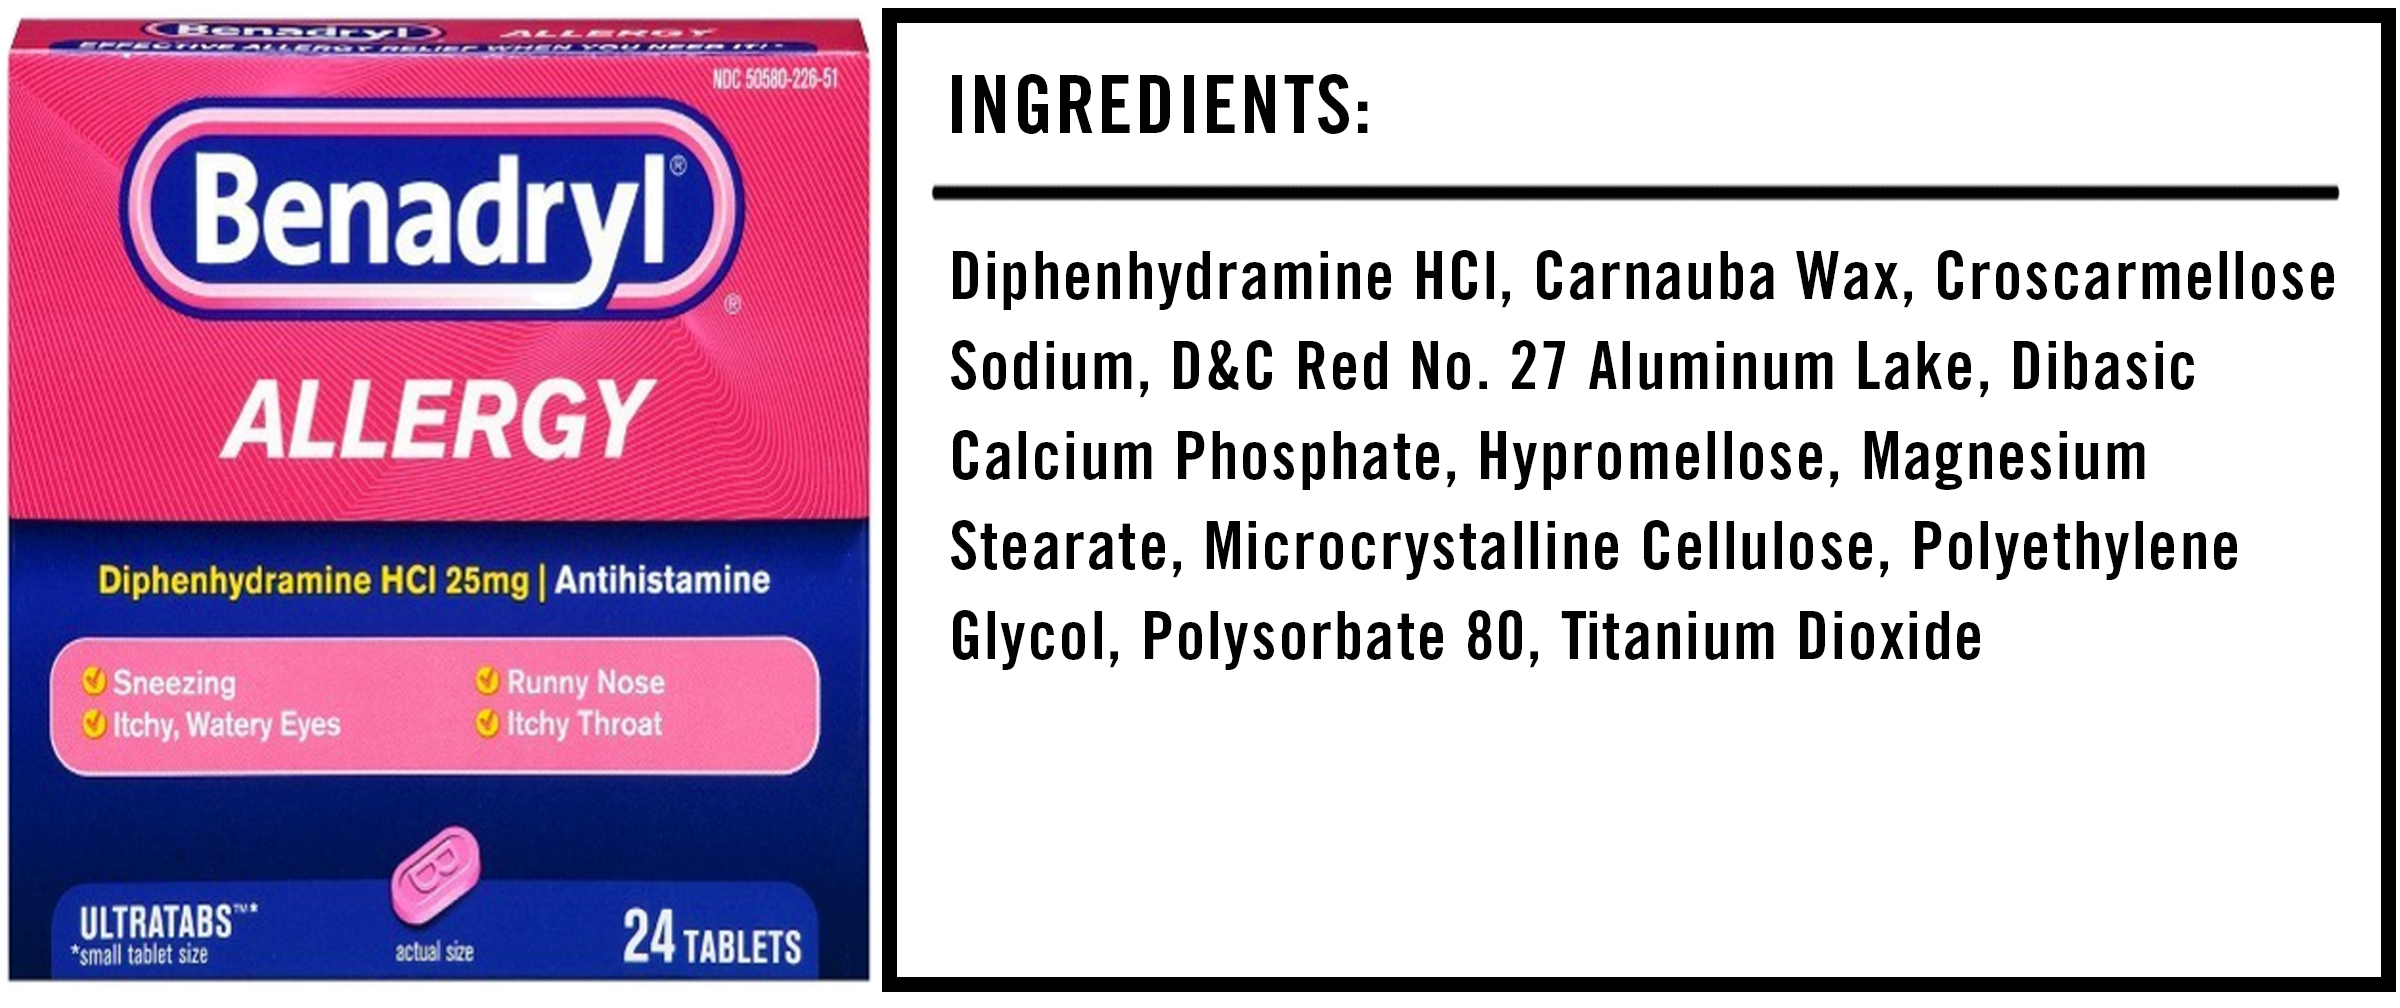 Benadryl Ingredients